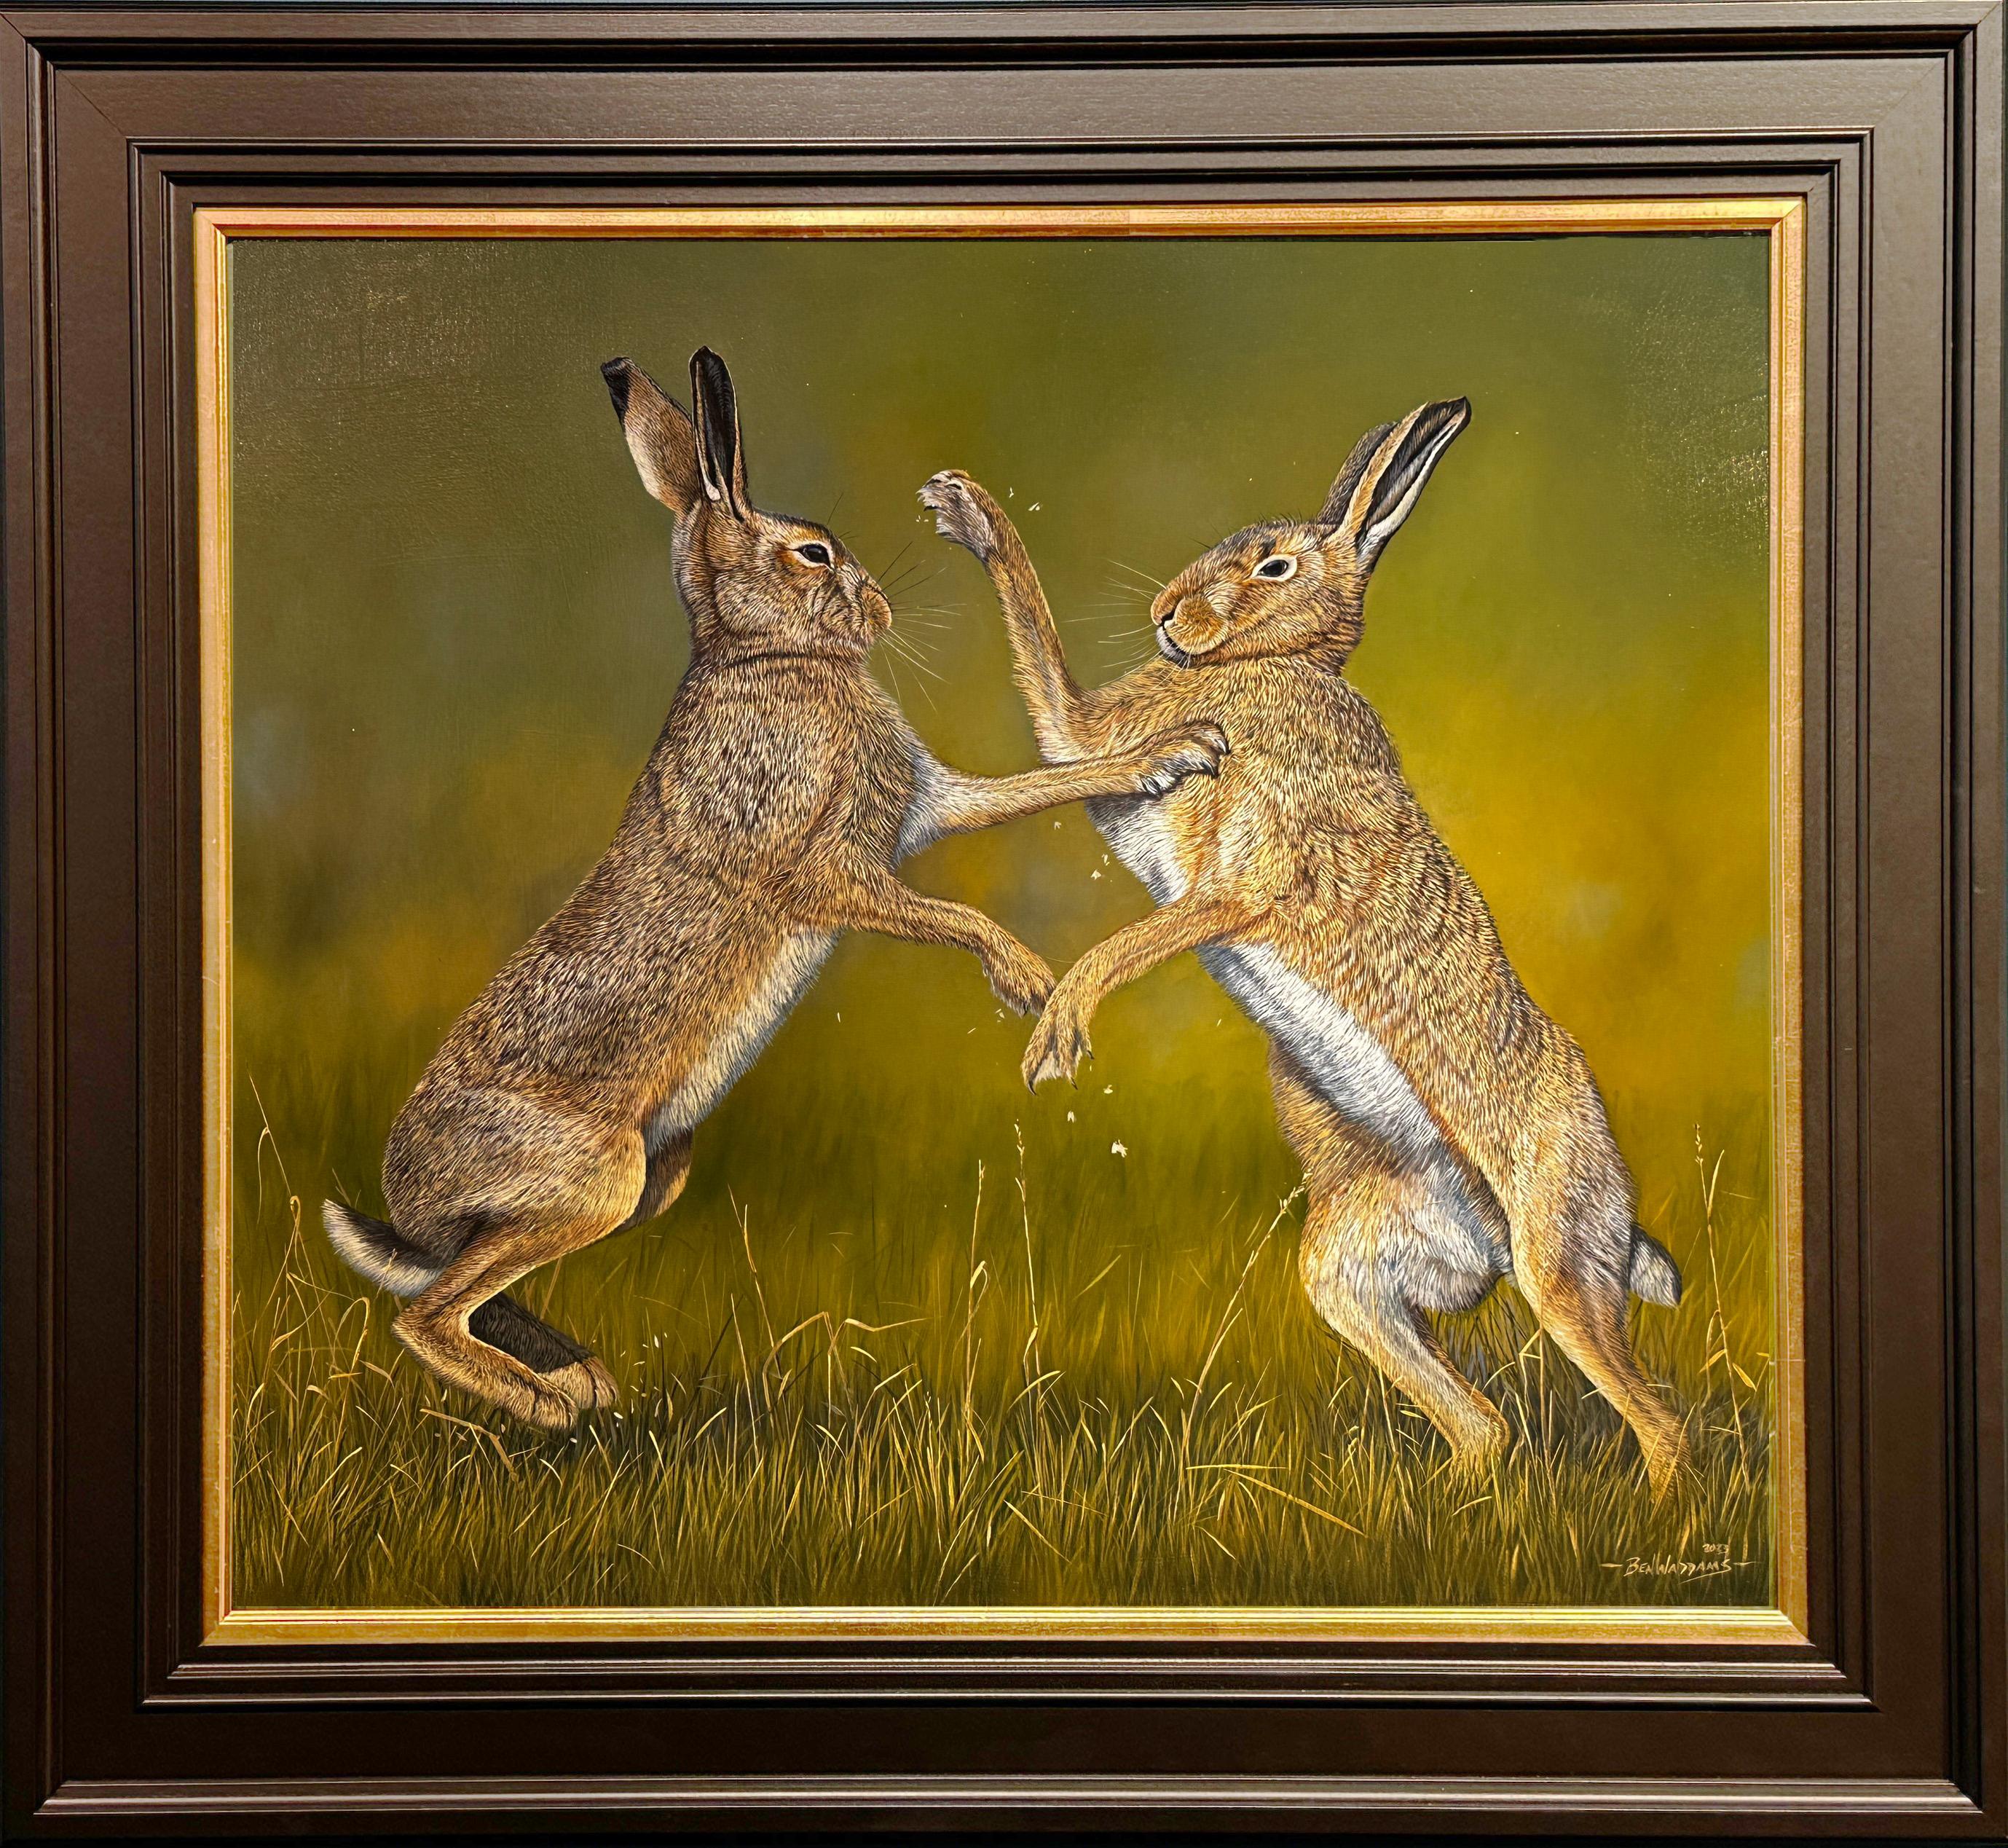 Ben Waddams Animal Painting – MadMarch" Contemporary Photorealist Wildlife Gemälde von zwei boxenden Hasen